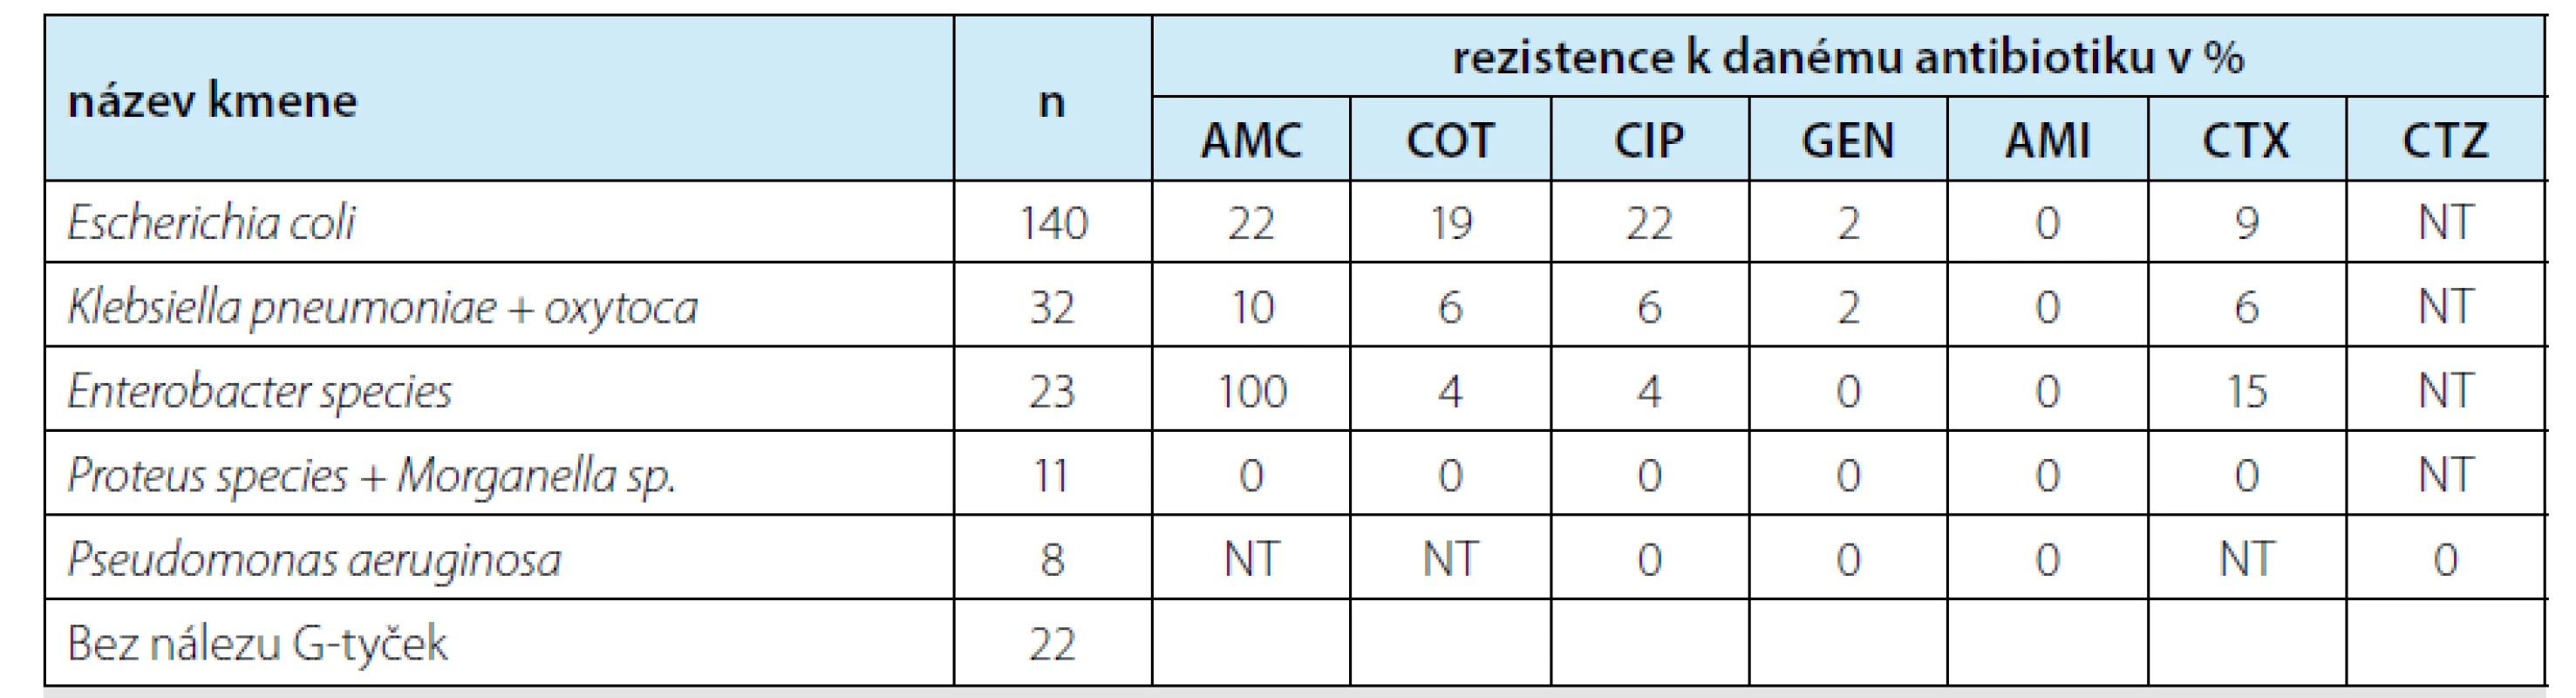 Kultivované bakteriální kmeny a procento rezistence k testovaným antibiotikům<br>
Tab. 1. Cultured bacterial strains and numbers of resistances